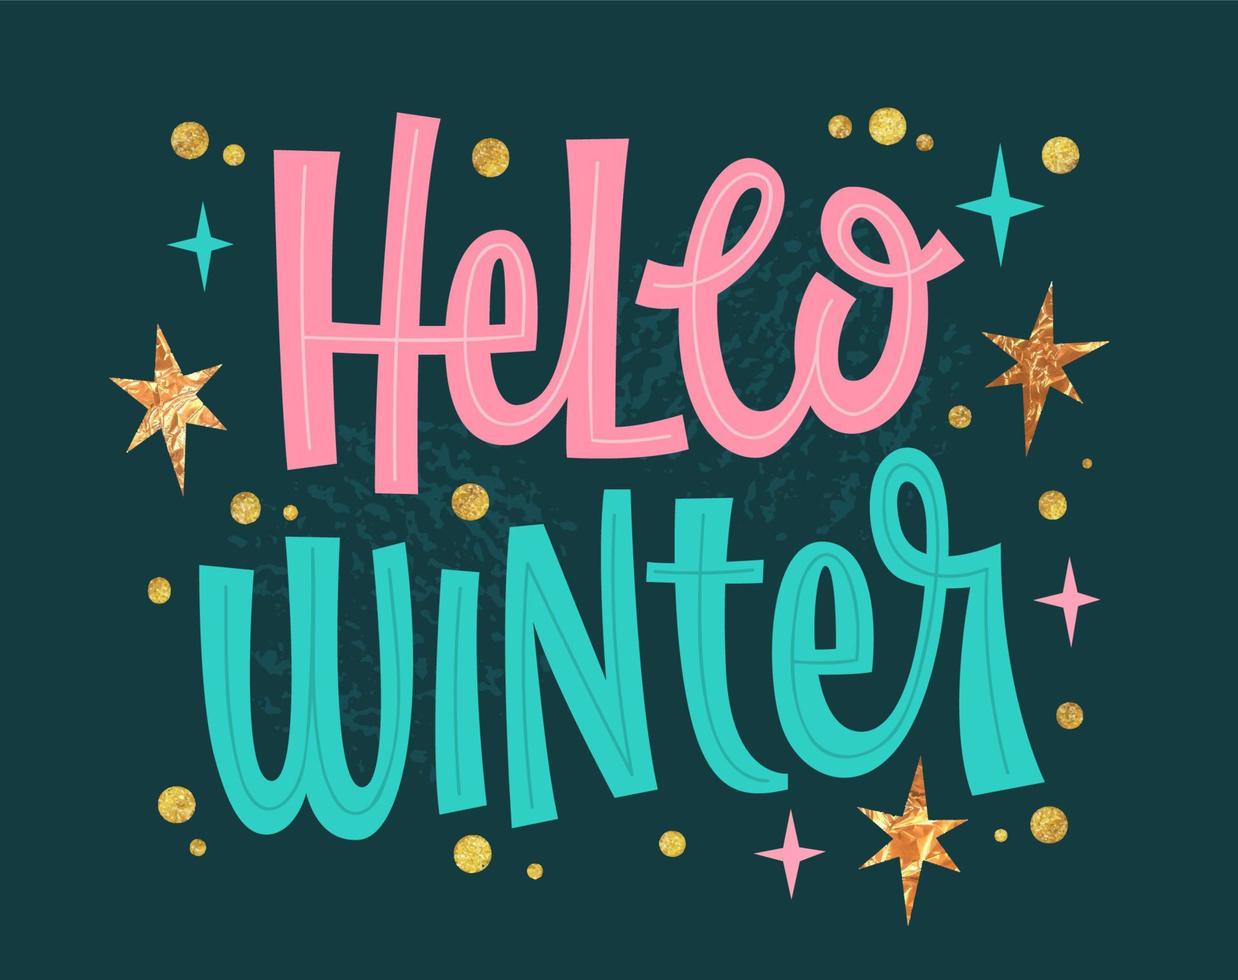 feestelijk modern vector belettering uitdrukking illustratie, Hallo winter. modieus roze, groente, goud kleuren typografie ontwerp voor winter themed evenementen.